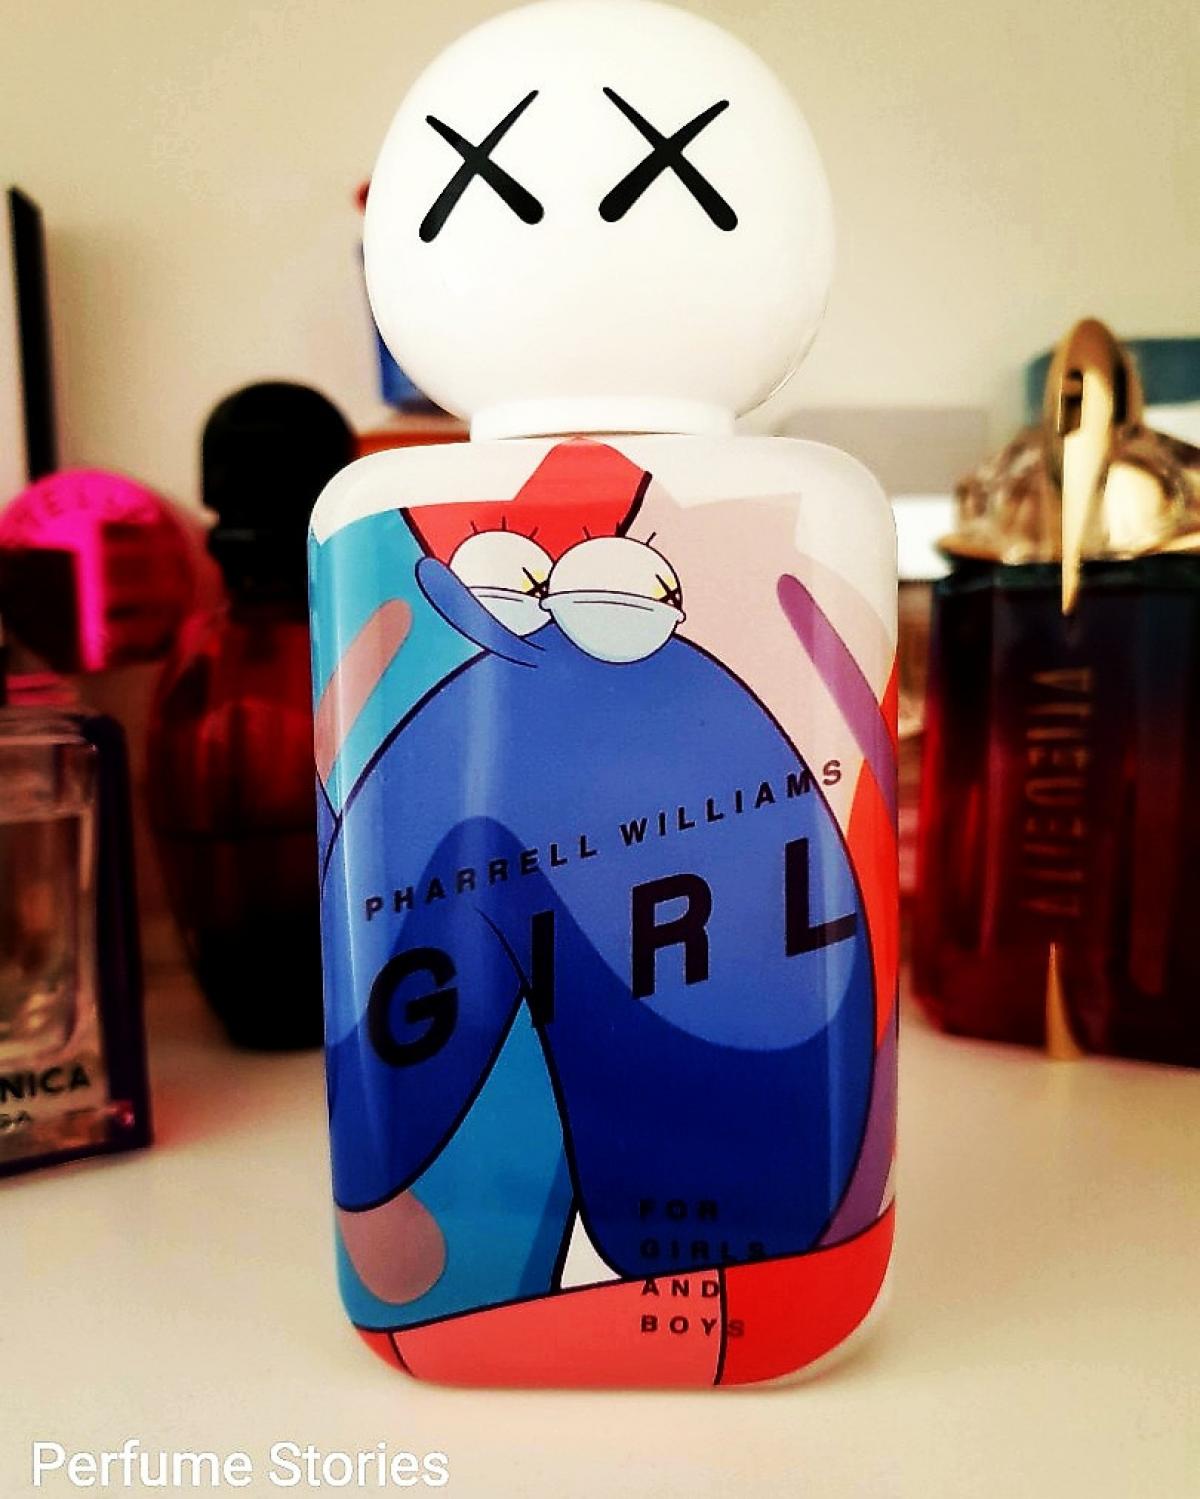 Girl Pharrell Williams perfume - a fragrance for women and men 2014